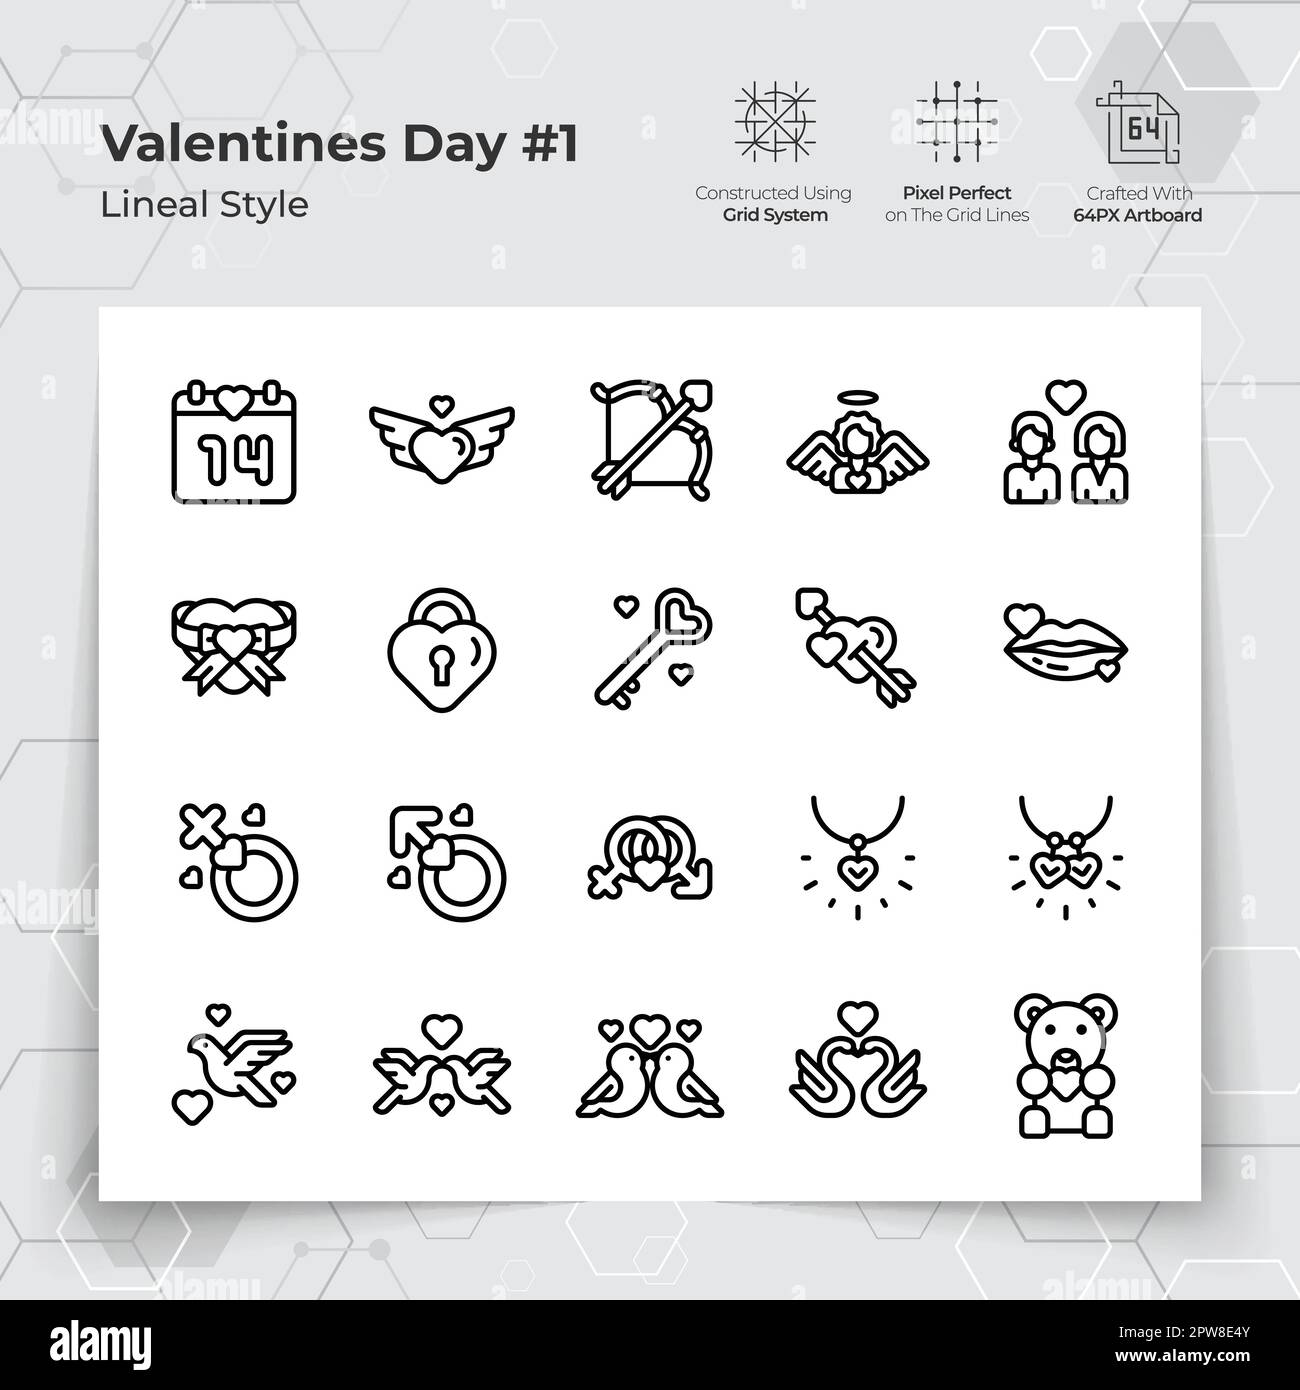 Valentinstag-Ikone mit schwarzer Linie und einem Liebes- und Herzmotiv. Eine Sammlung von Liebes- und Romantik-Vektorsymbolen für die Valentinstagsfeier. Stock Vektor